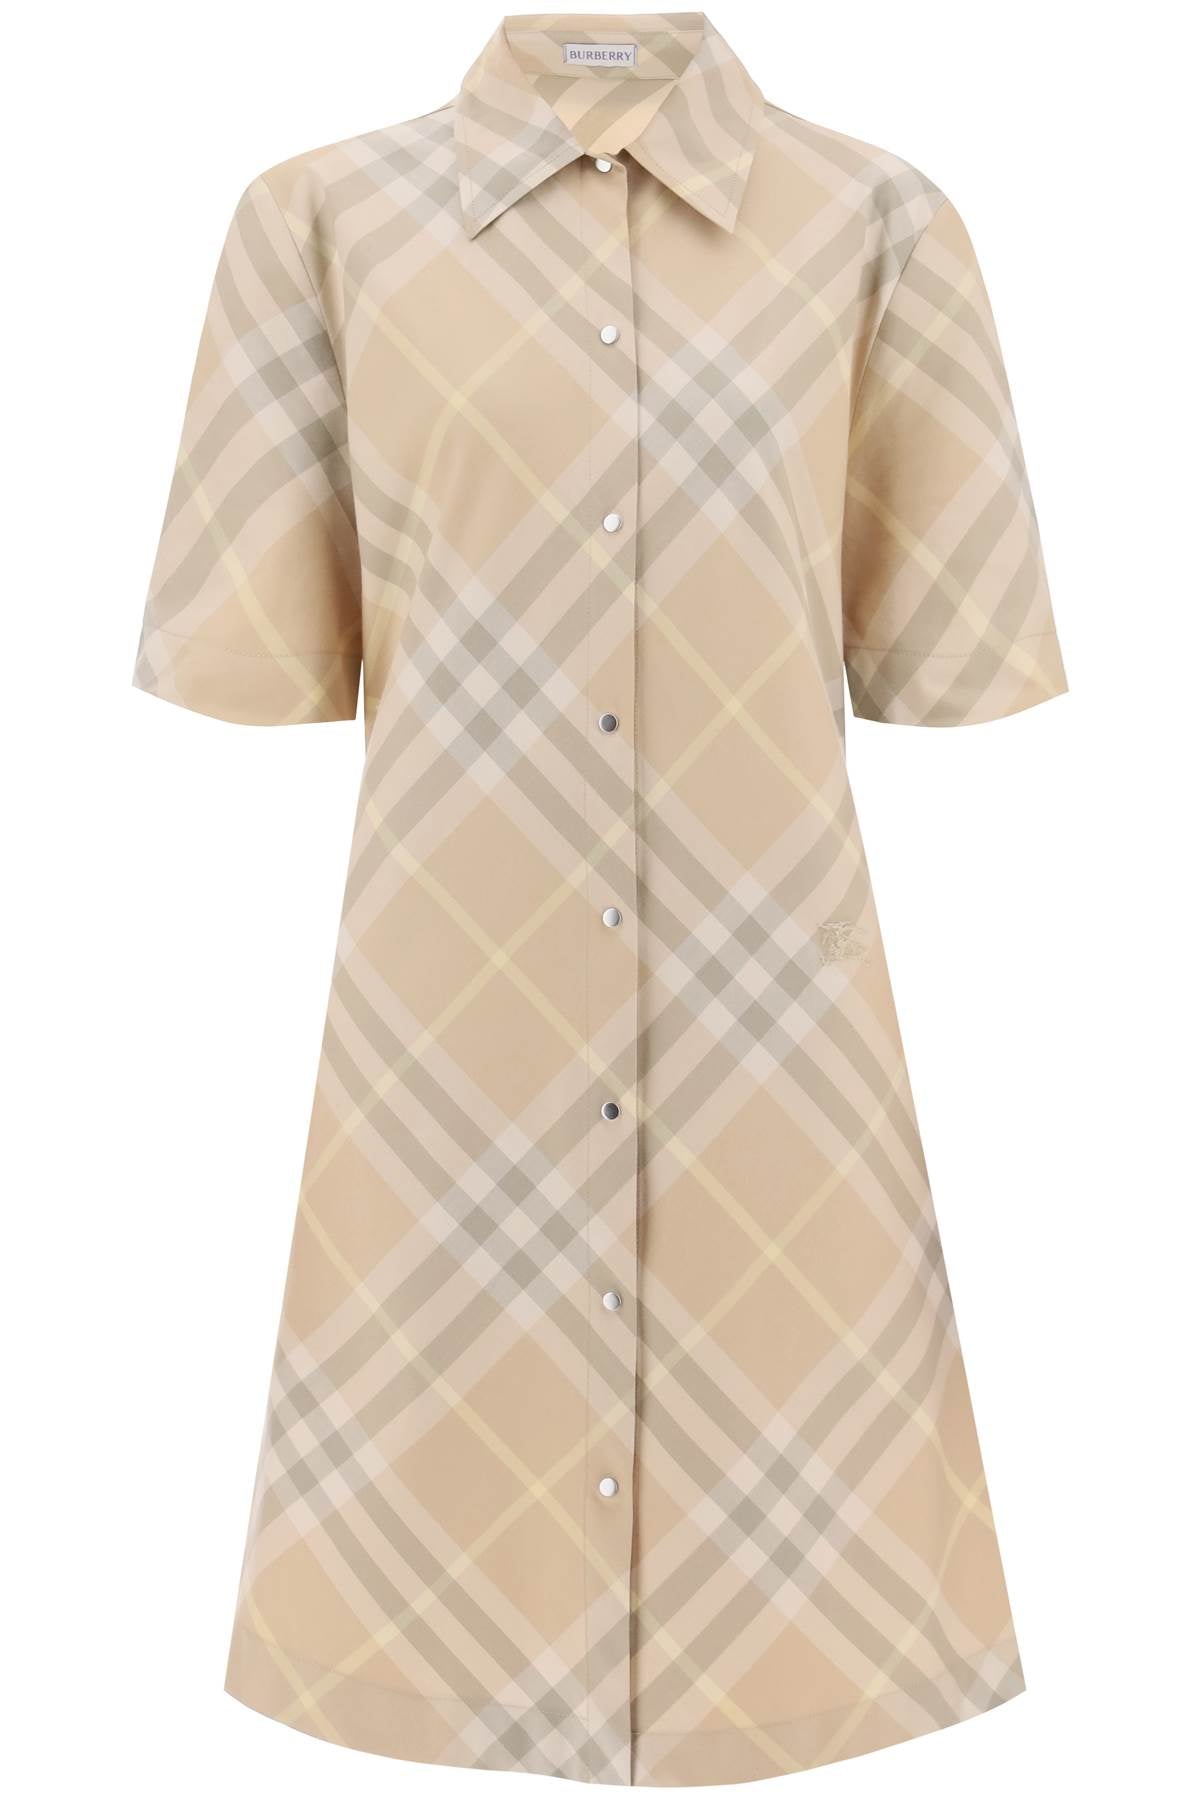 Burberry Check Shirt Dress-Burberry-8-Urbanheer